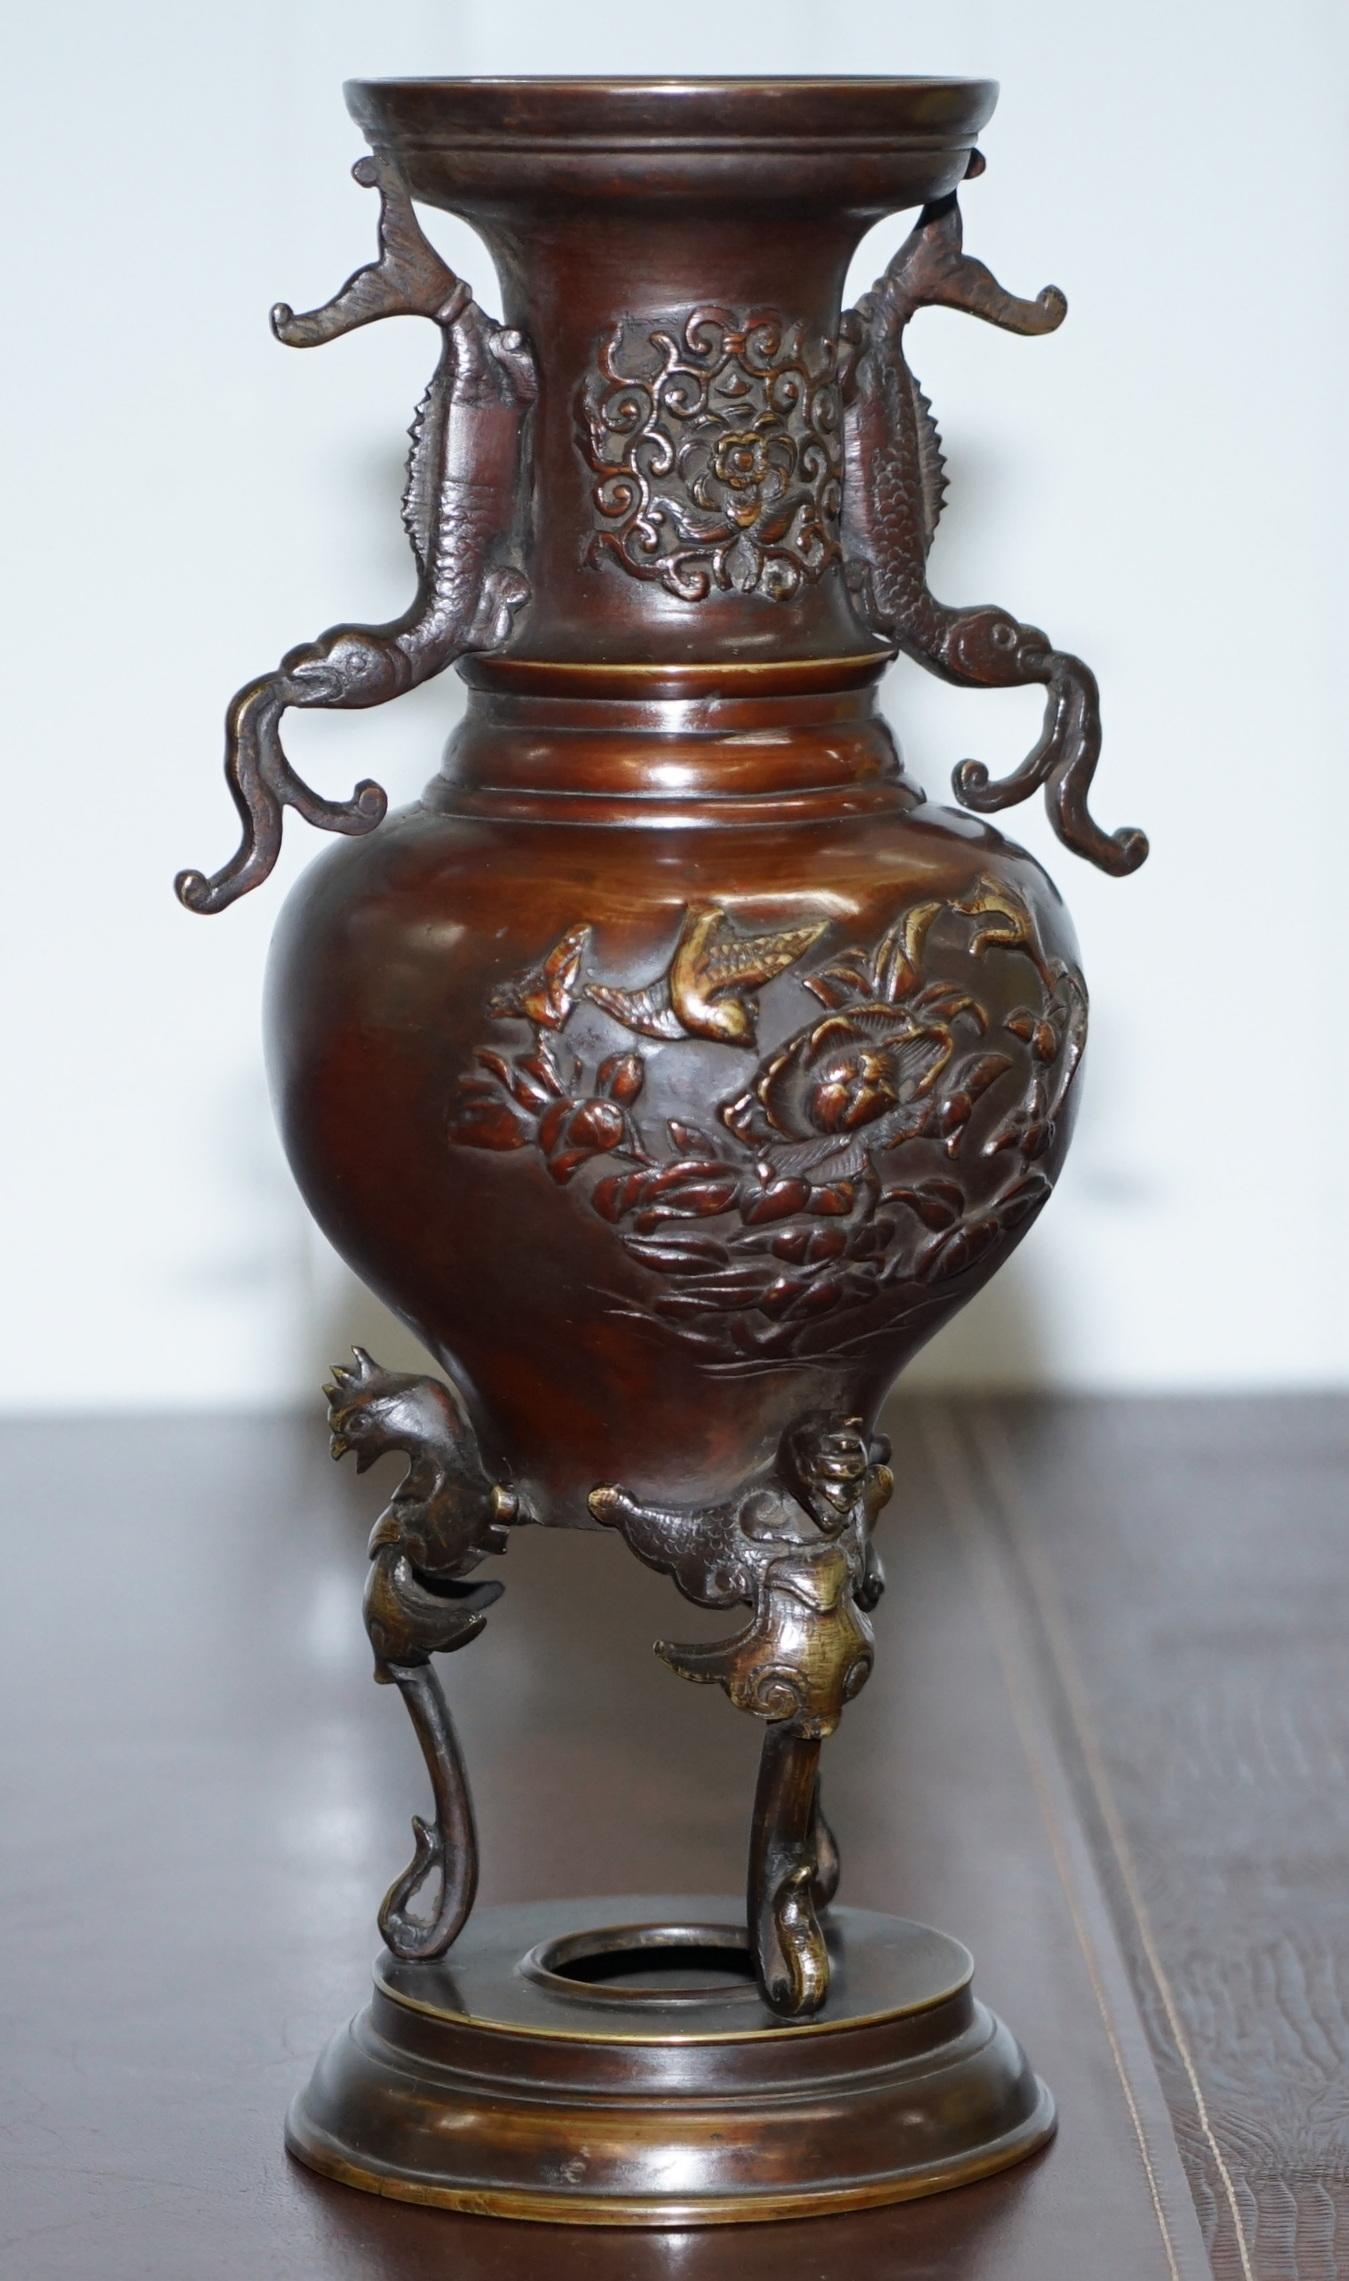 Wir freuen uns, dieses schöne Paar orientalischer Bronze-Urnenvasen mit Vogel- und Schlangendarstellungen zum Verkauf anbieten zu können.

Ein gut aussehendes und dekoratives Paar in schönem Zustand, es handelt sich um Exportstücke, die für den